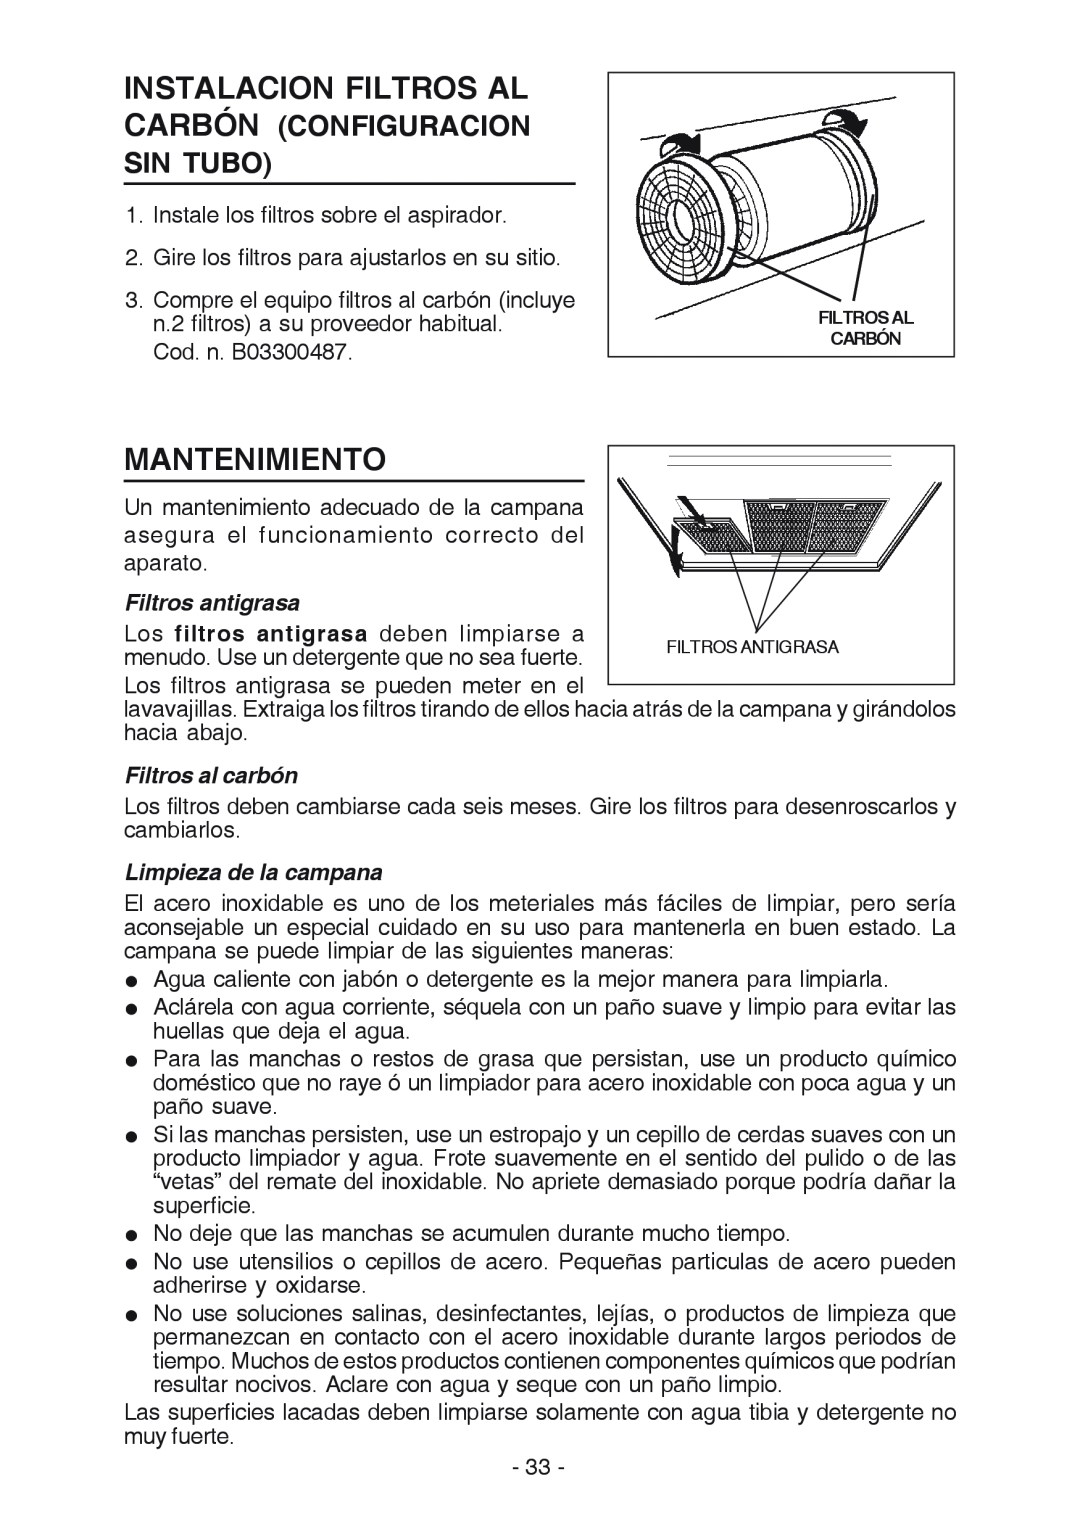 Best K3139 manual Mantenimiento, Filtros antigrasa, Filtros al carbón, Limpieza de la campana 